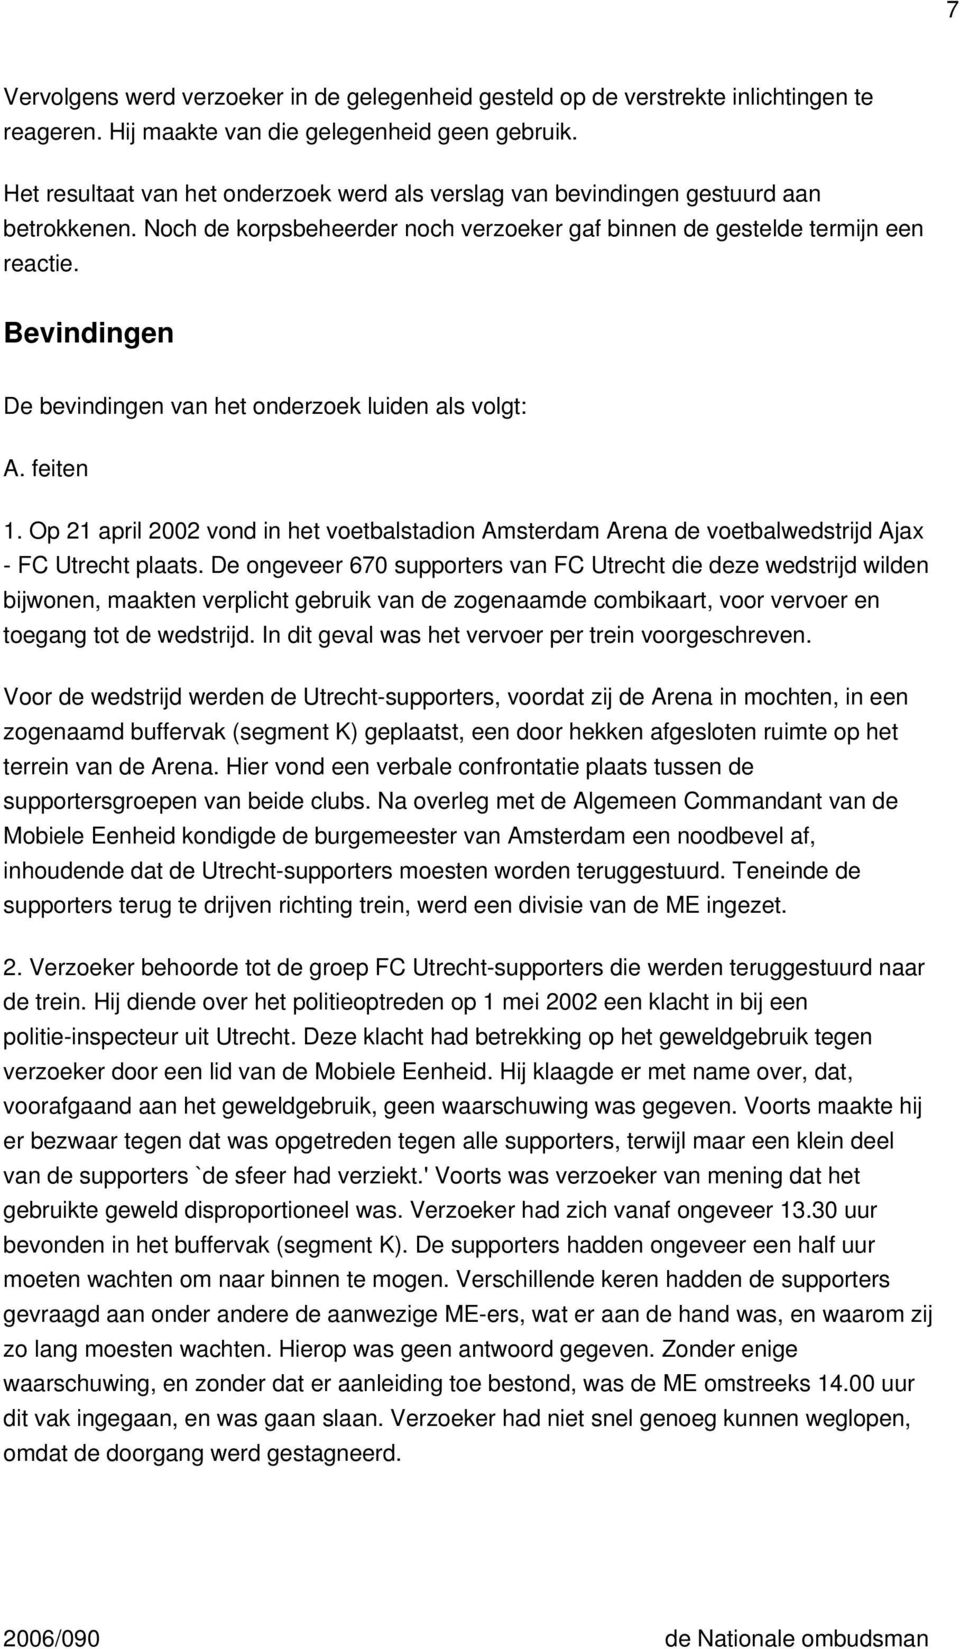 Bevindingen De bevindingen van het onderzoek luiden als volgt: A. feiten 1. Op 21 april 2002 vond in het voetbalstadion Amsterdam Arena de voetbalwedstrijd Ajax - FC Utrecht plaats.